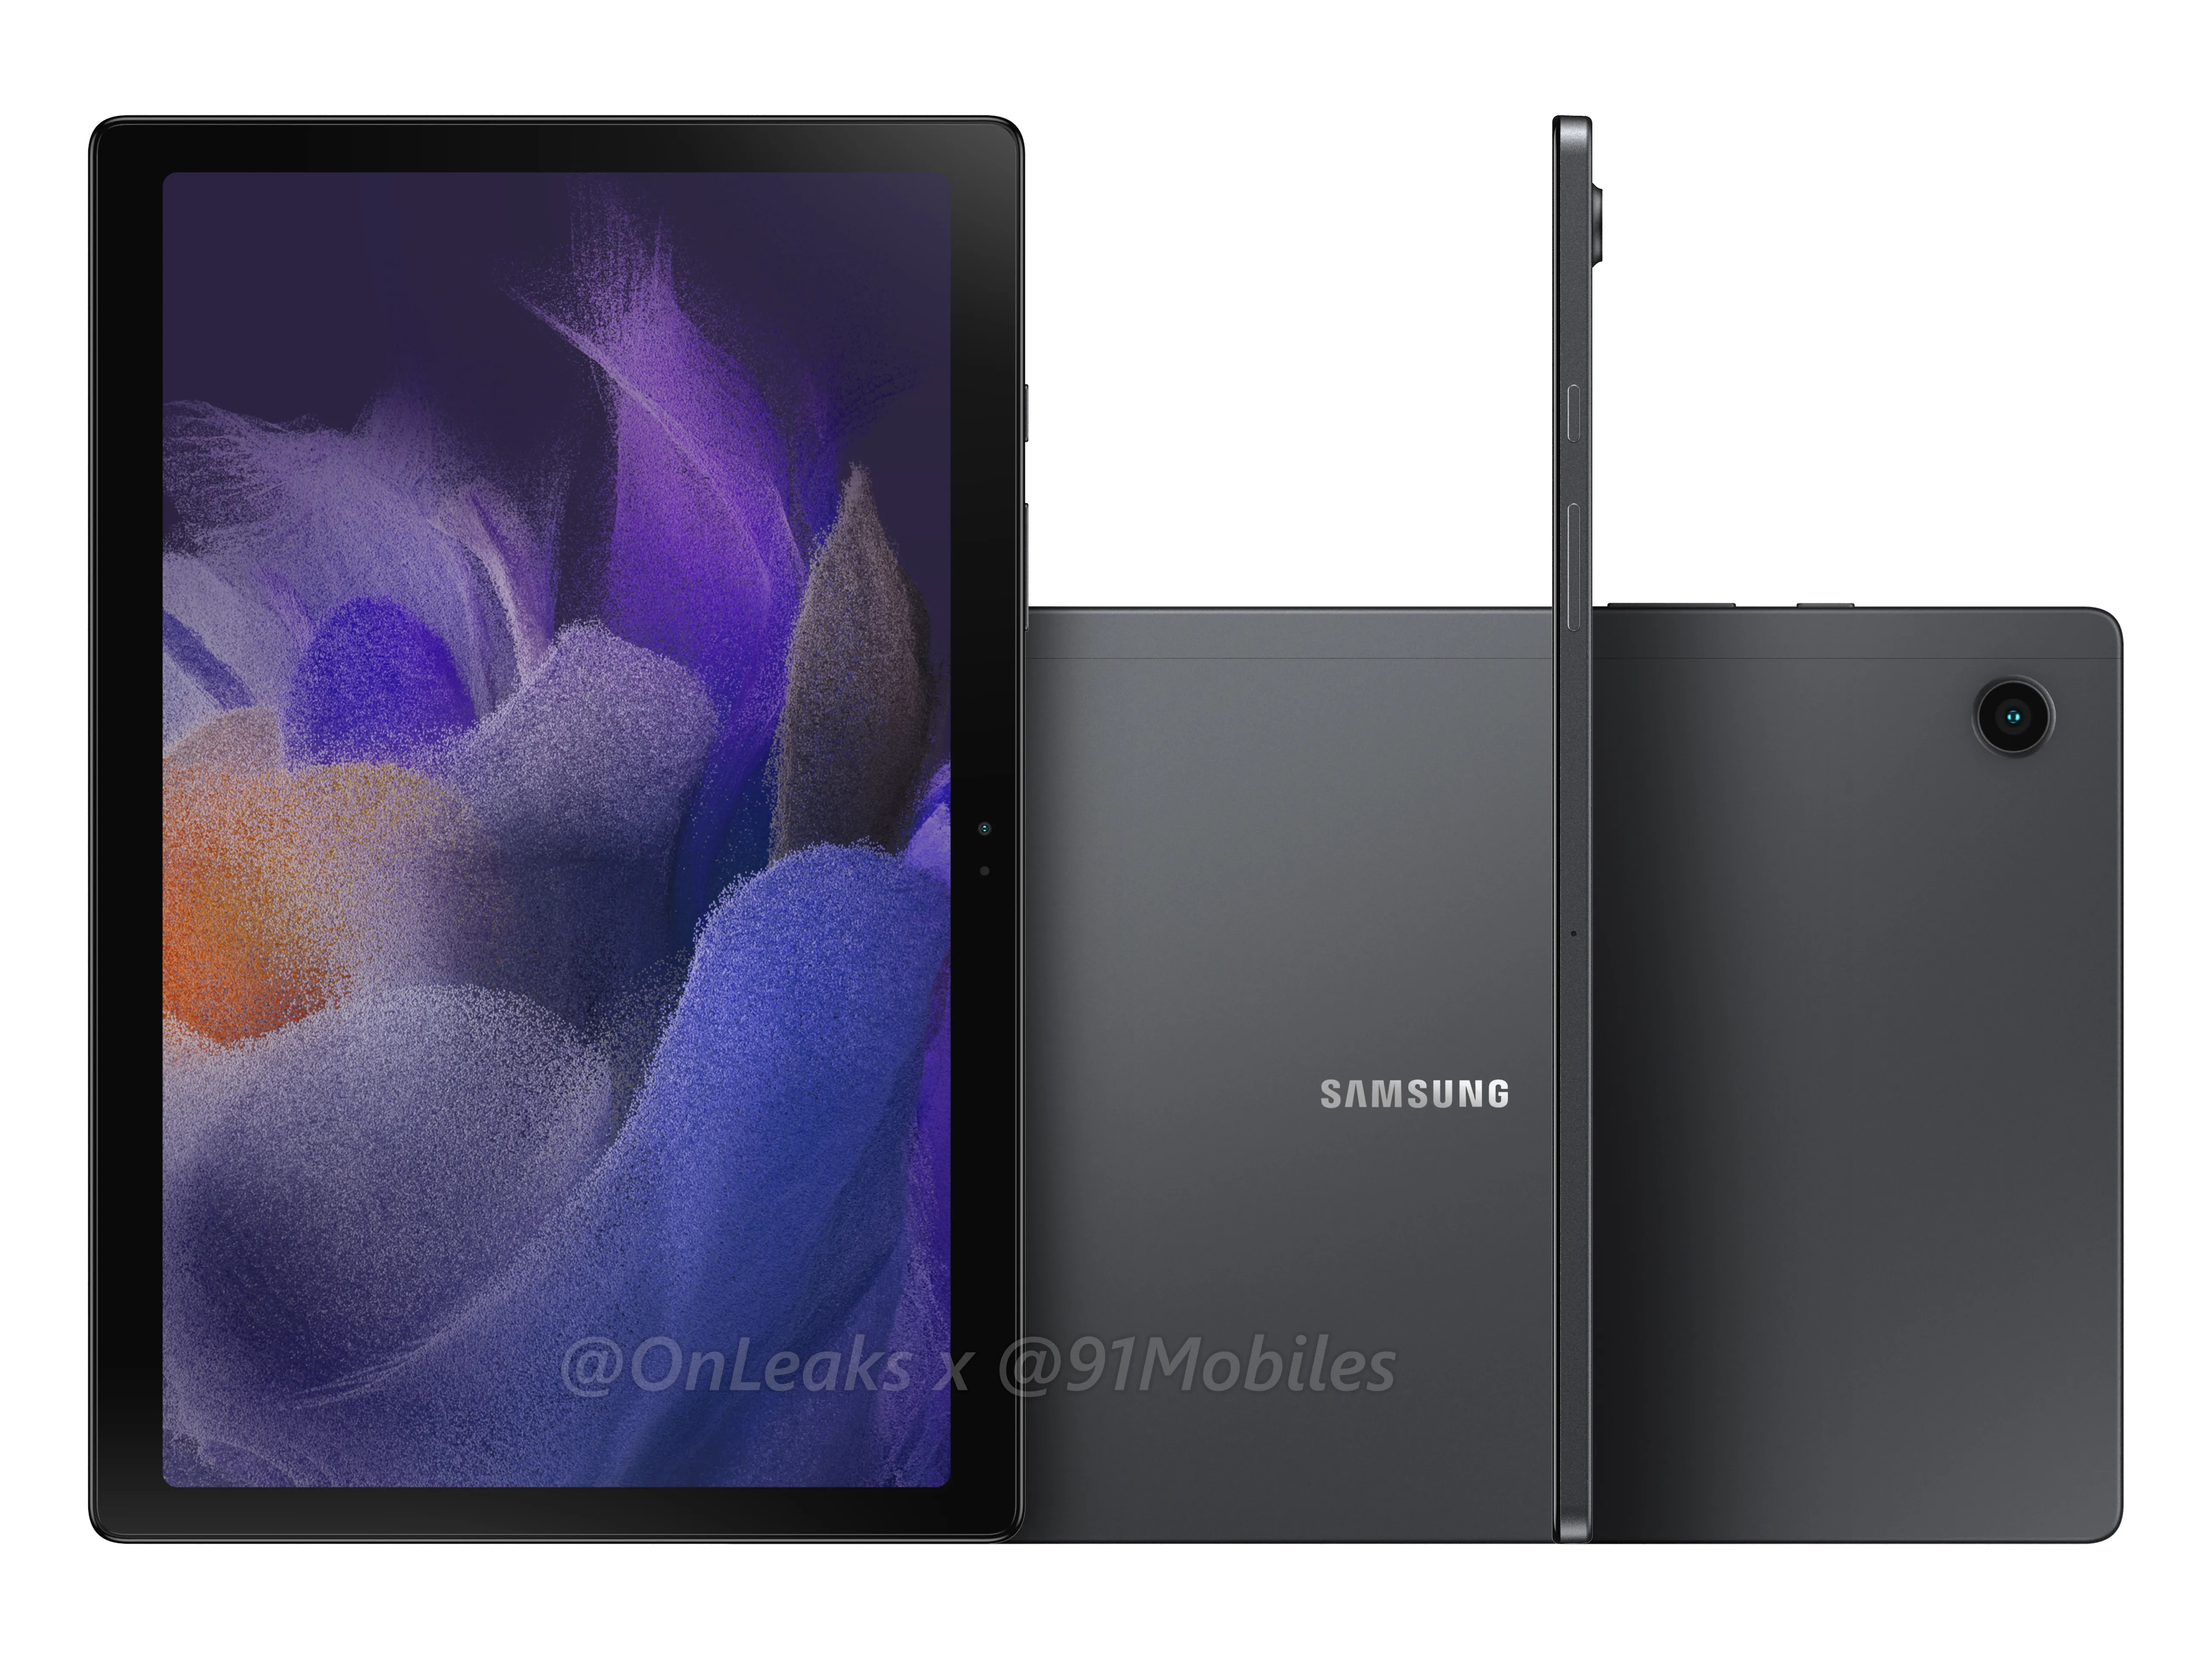 Insider ujawnia specyfikację i pokazuje rendery nowego, niedrogiego tabletu Samsung Galaxy Tab A8 2021